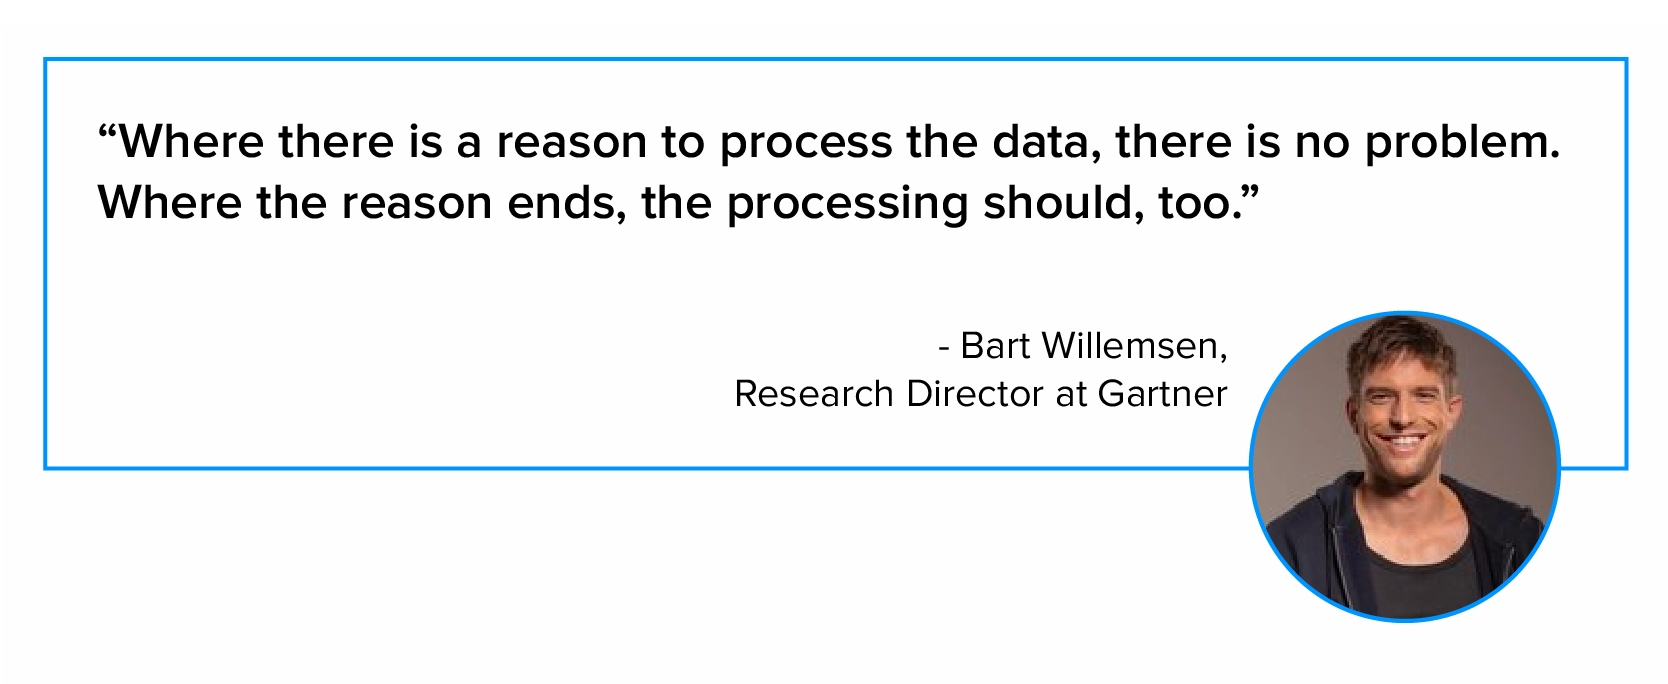 Cytat na temat przetwarzania danych przez Barta Willemsena